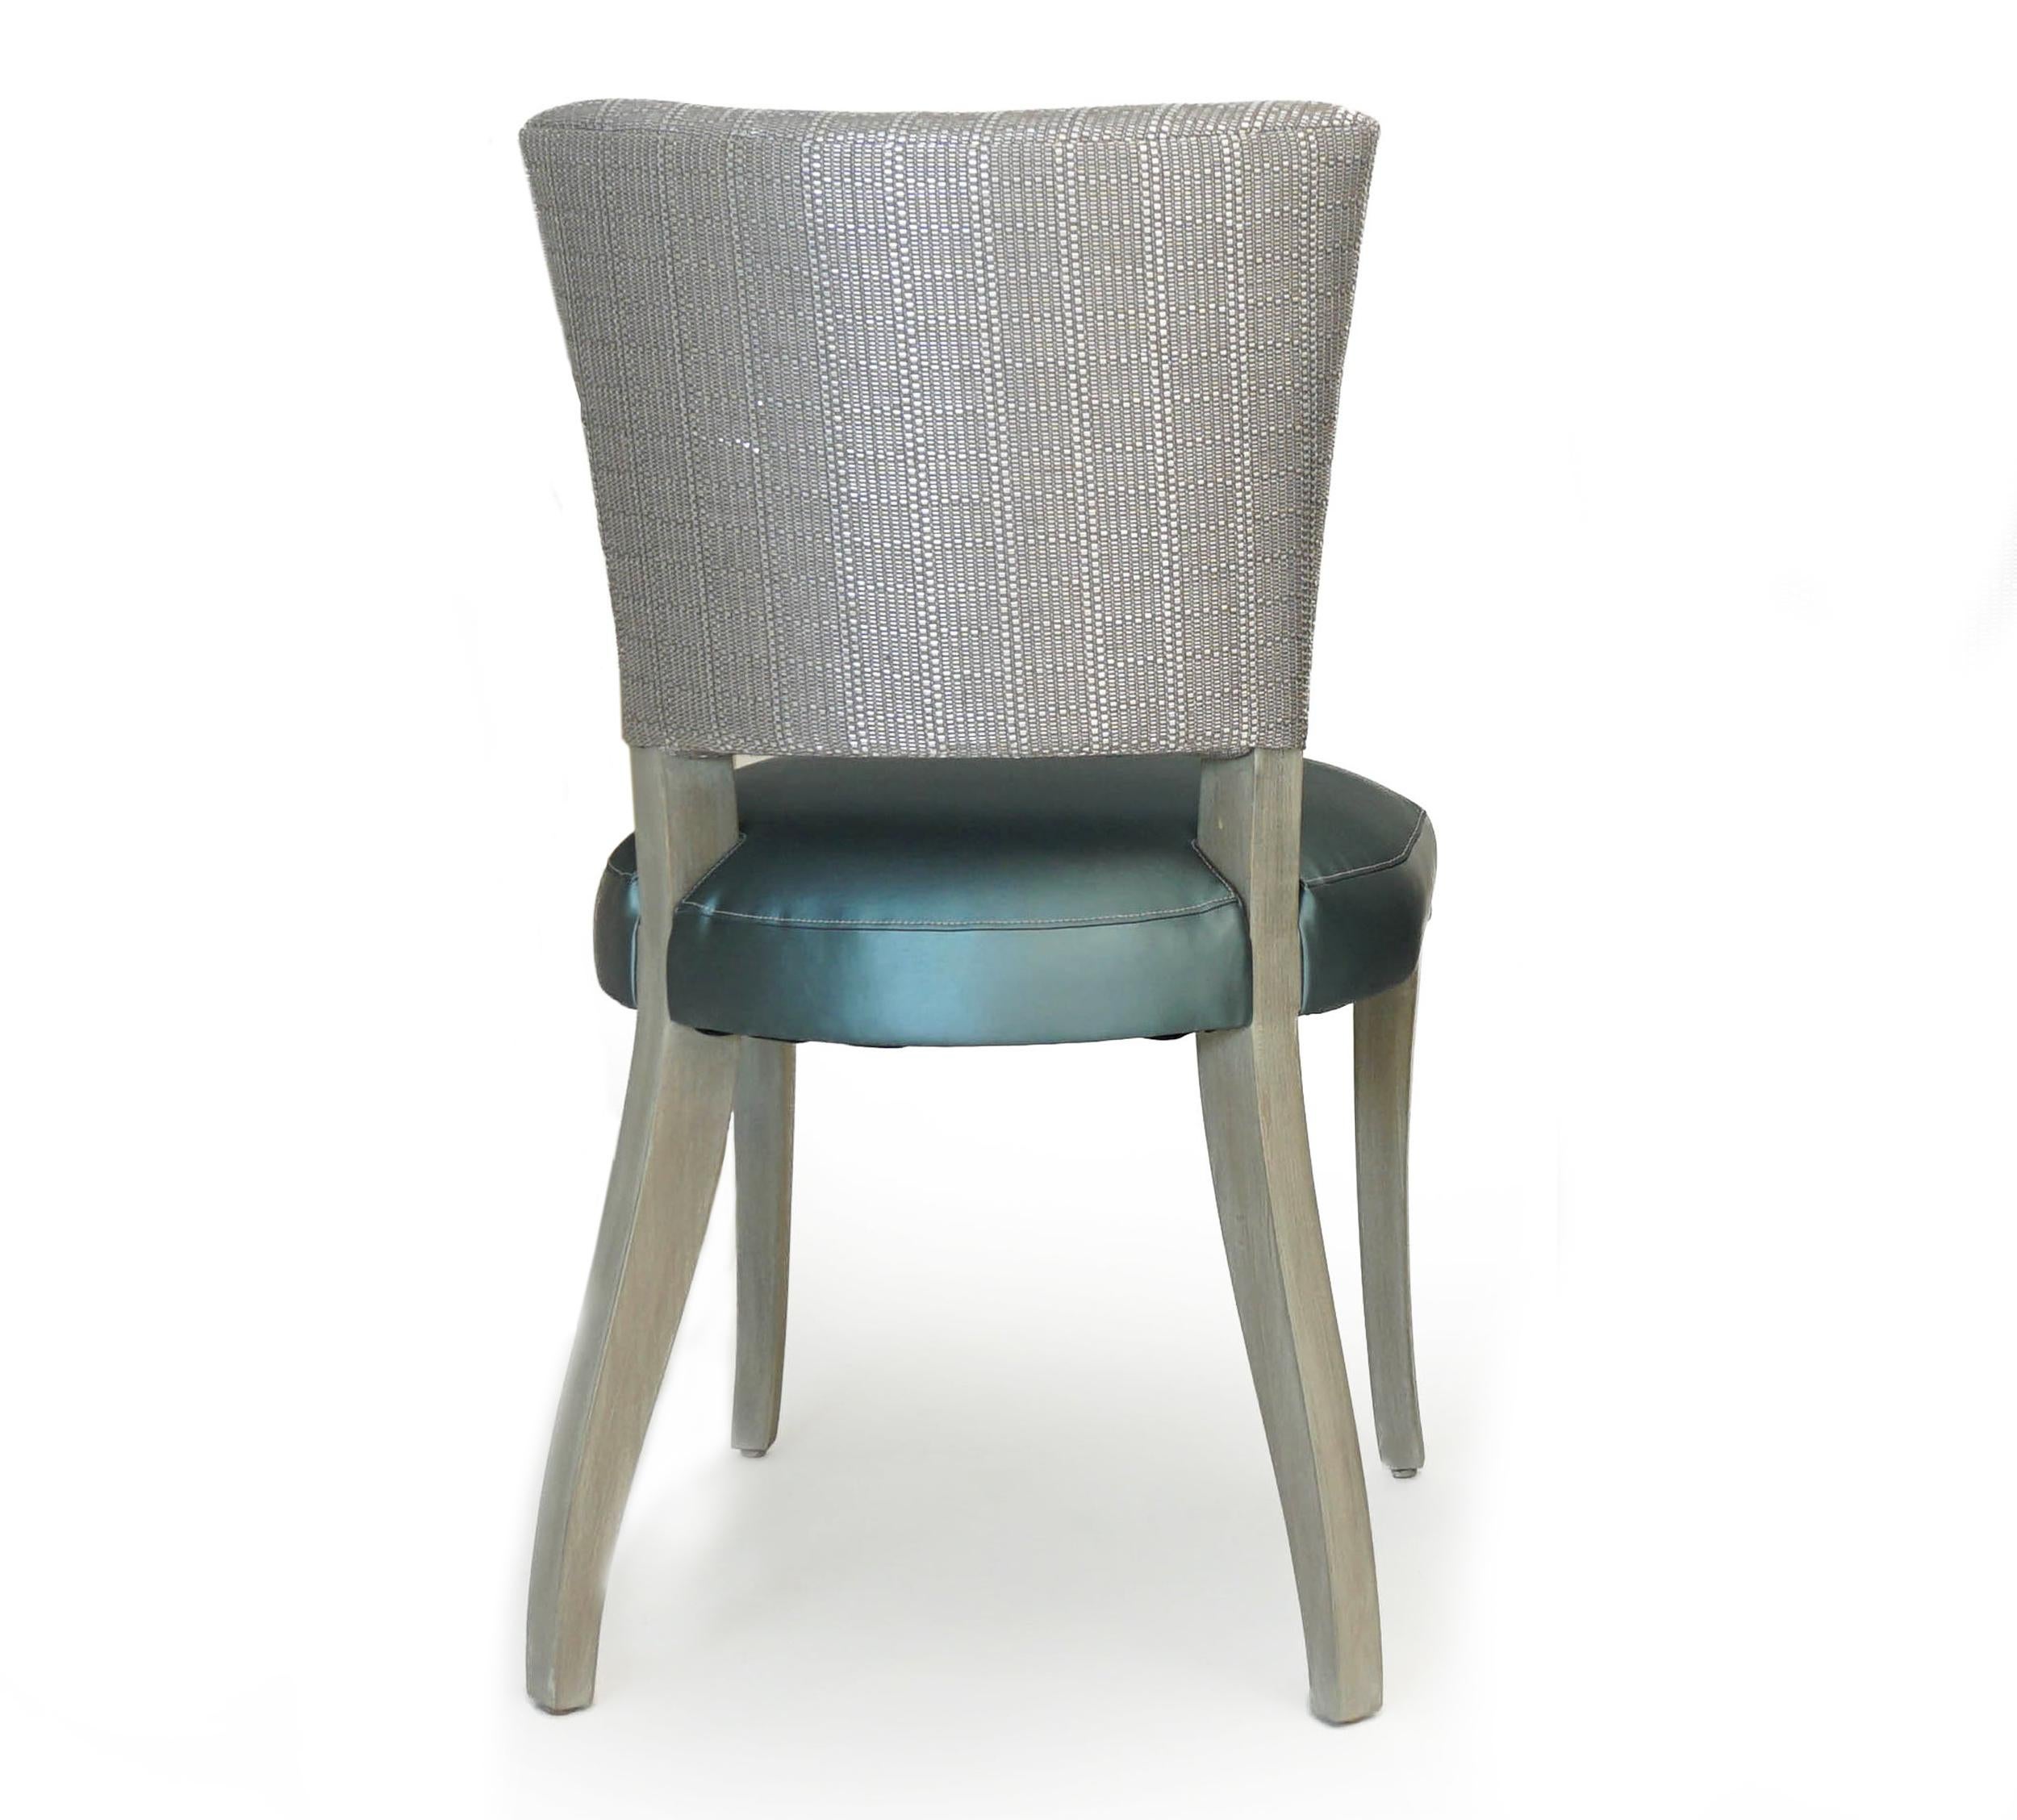 Chaise de salle à manger à dossier ouvert de style transitionnel, recouverte d'un tissu vinylique bleu et or avec un dossier tissé métallique. La structure de cette chaise de salle à manger est en érable dur massif, avec une finition suédoise. Les